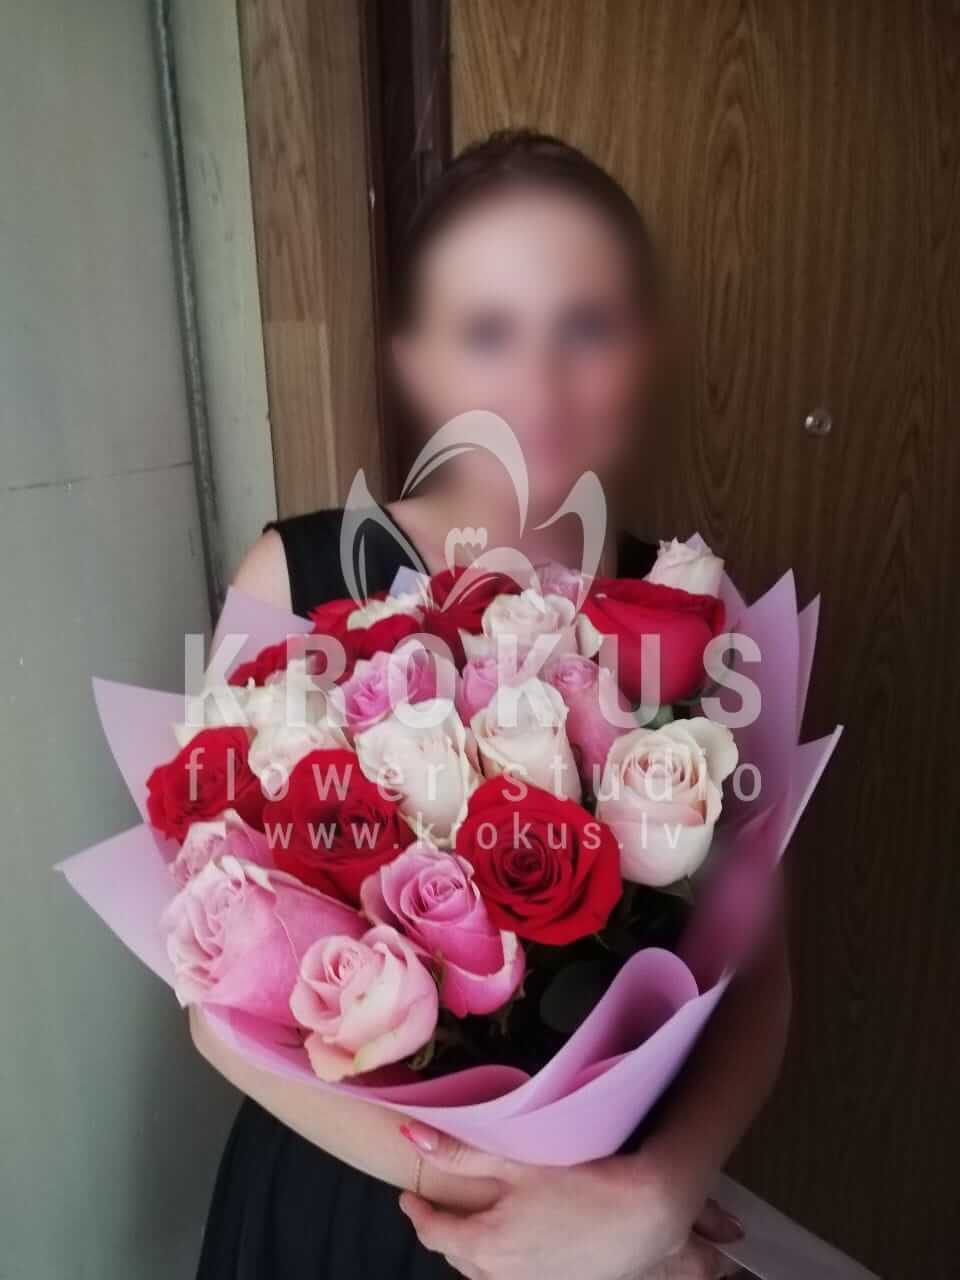 Доставка цветов в город Рига (розовые розыбелые розыоранжевые розыкрасные розыжелтые розы)